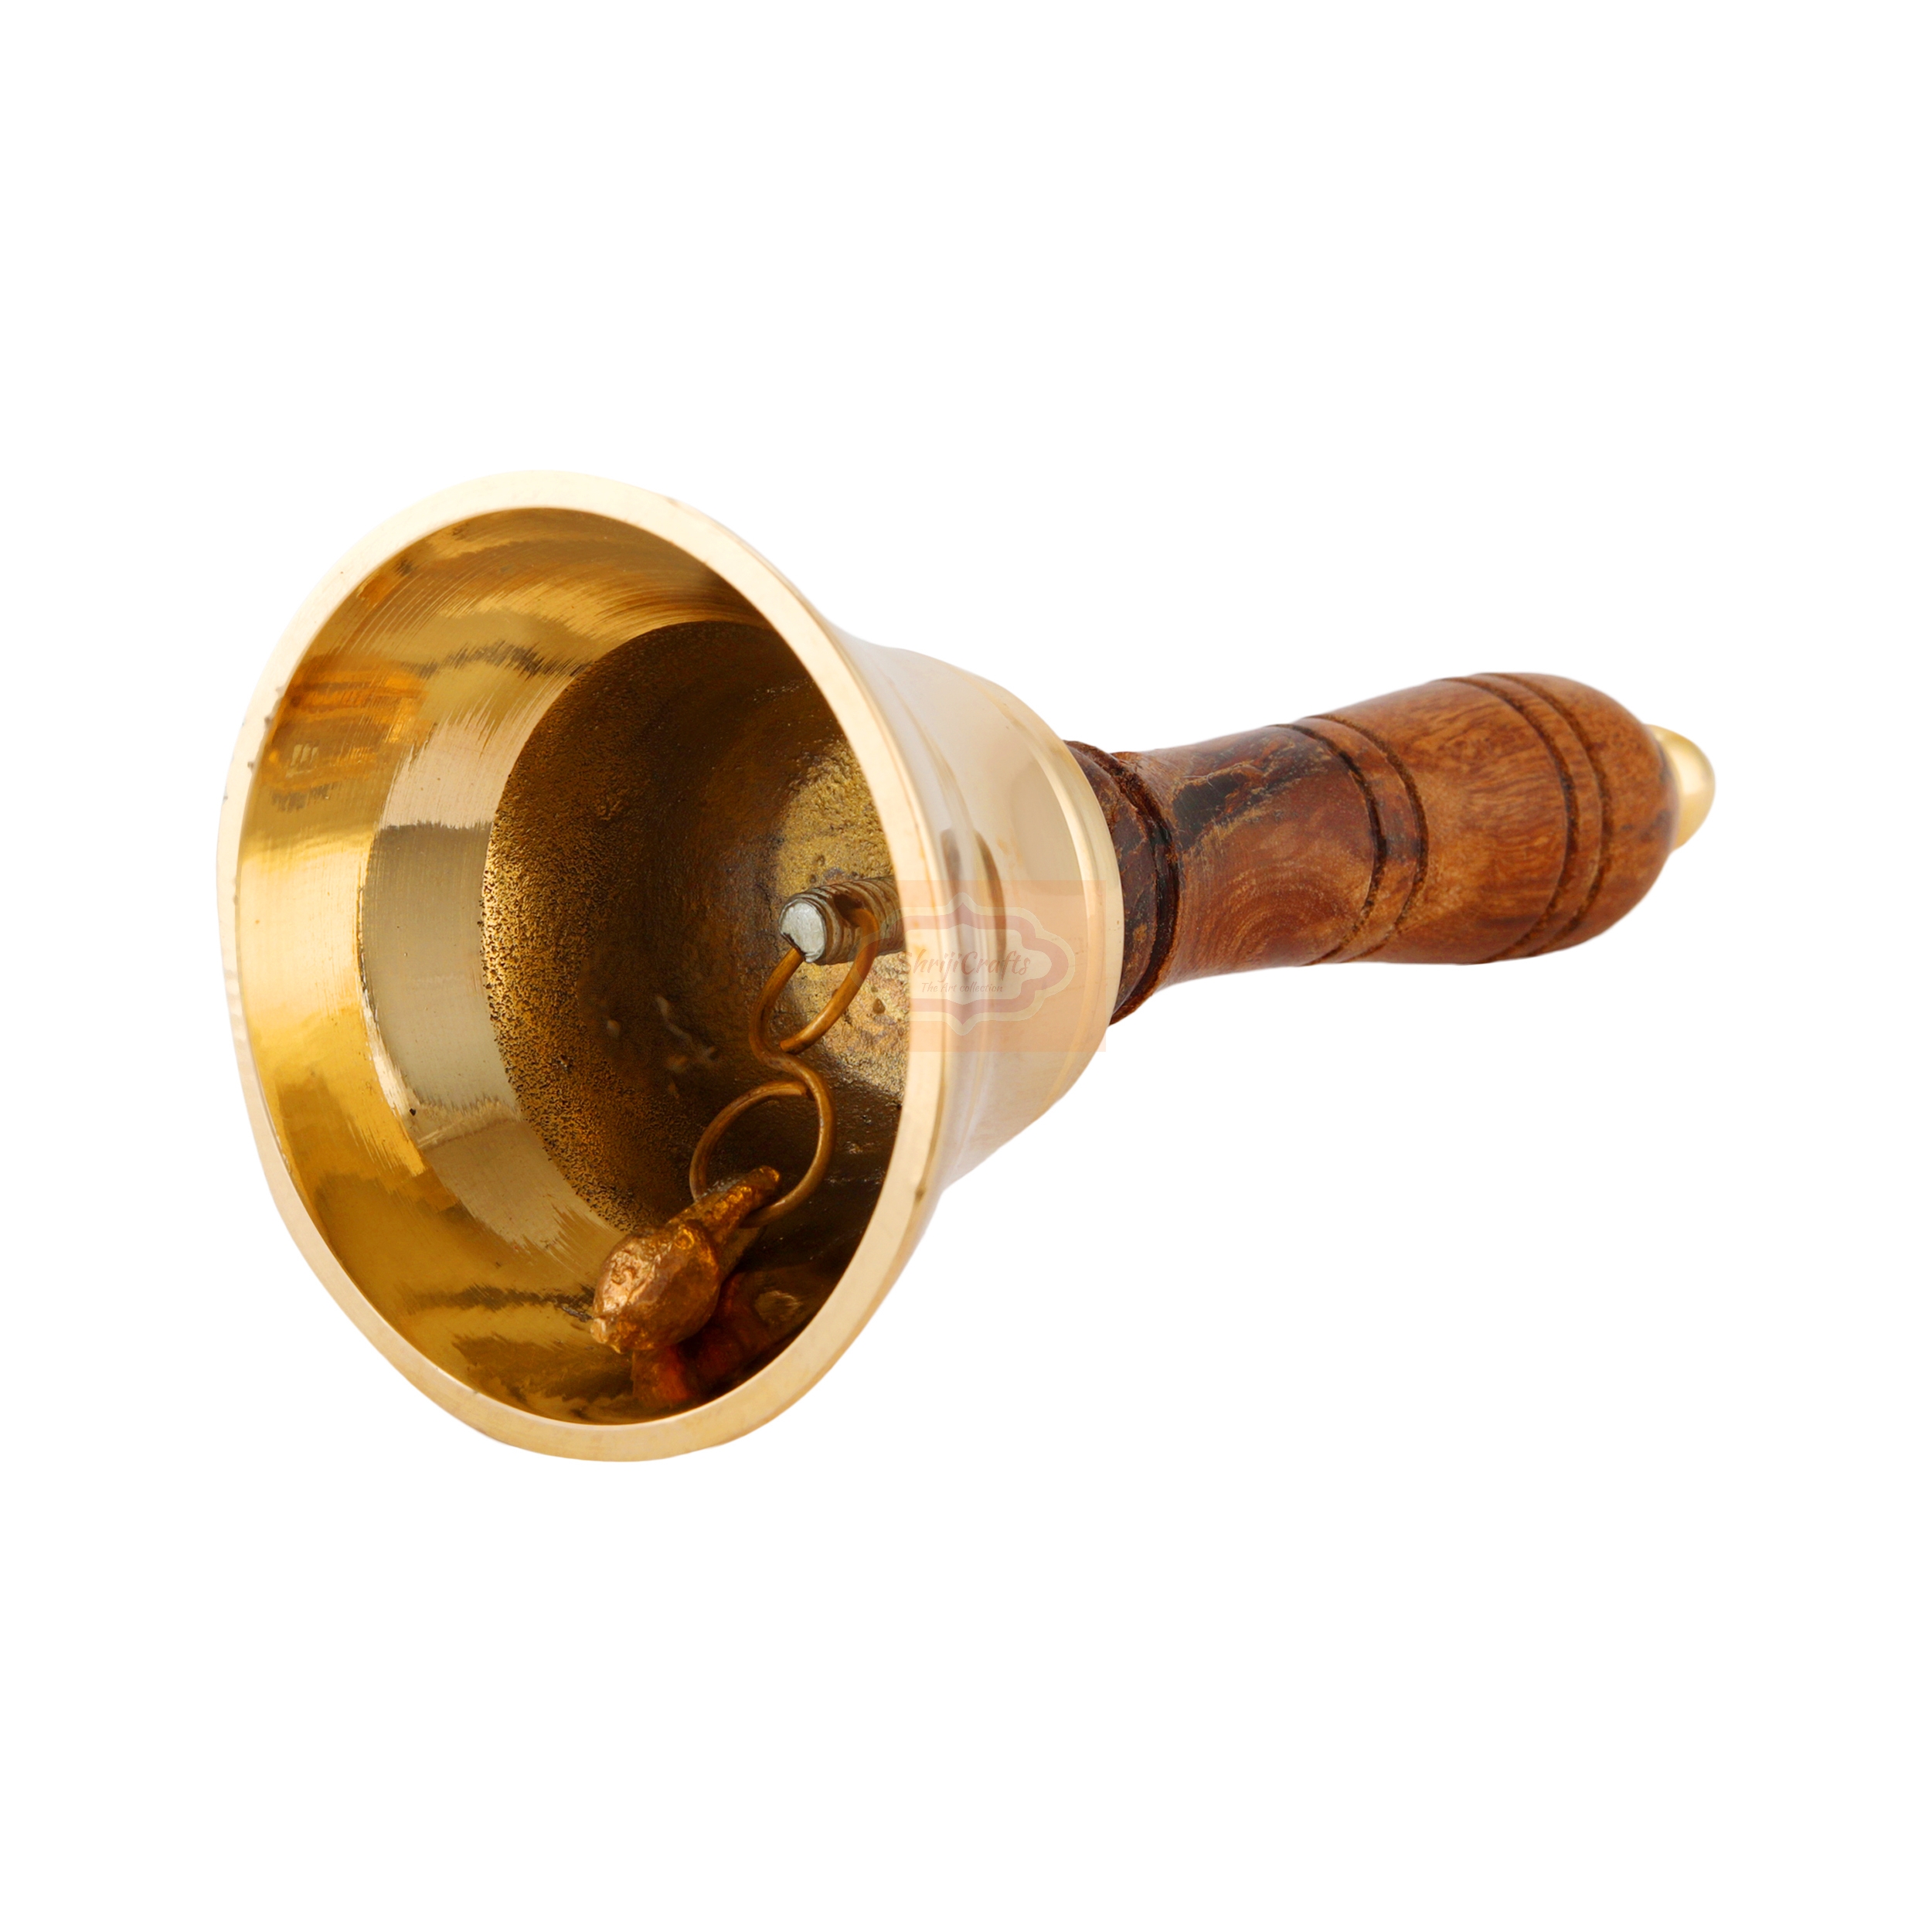 Shrijicrafts | ShrijiCrafts® Christmas Brass Hand Bell/Gold Finish Hand Bells with Wooden Handle ~ Maritime Church Bell, Brass School Bell Best Gift 2